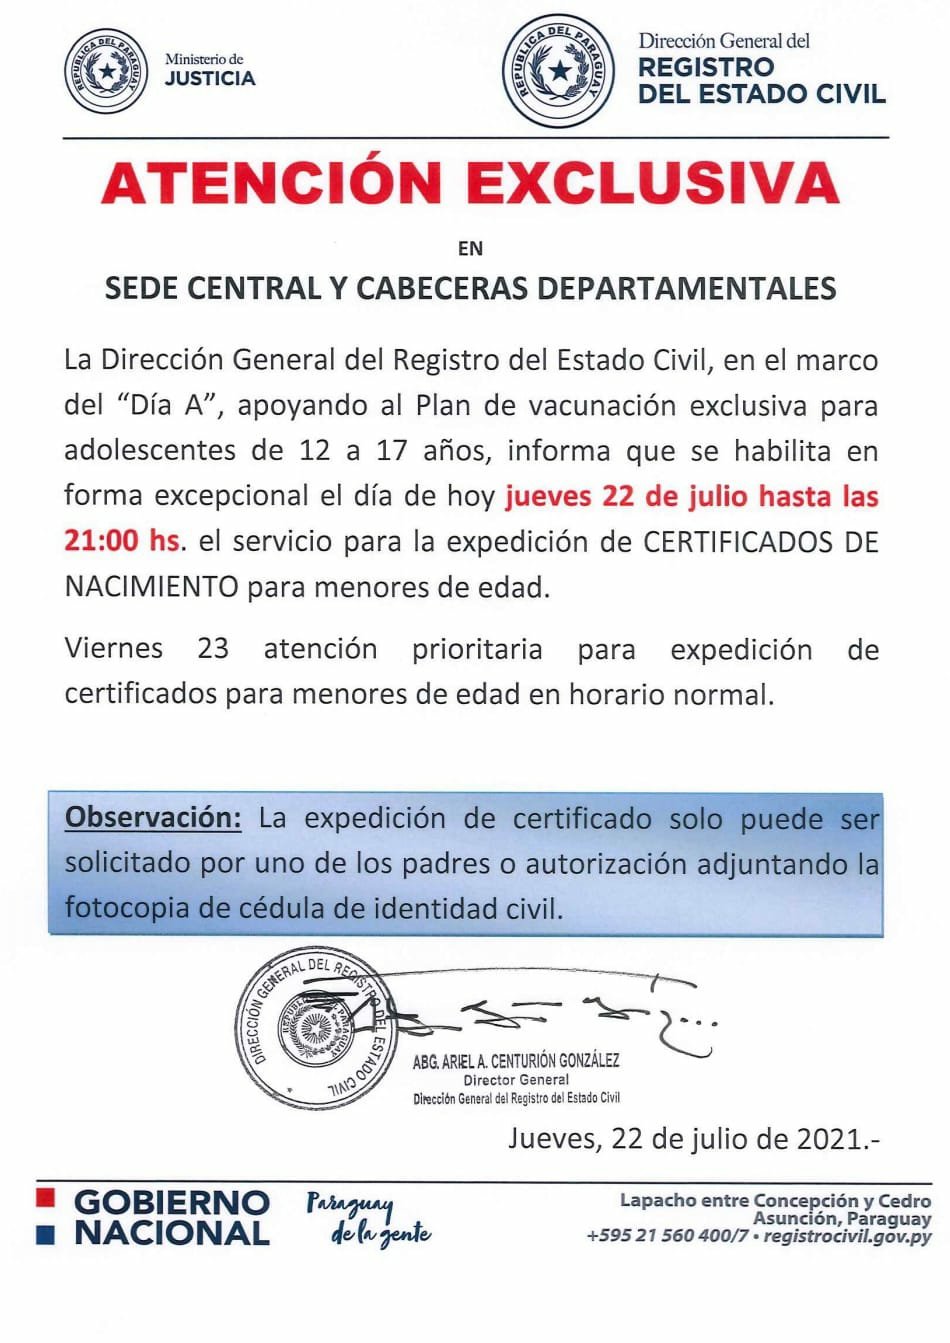 Registro Civil atenderá hasta 21:00 para gestionar certificado de nacimiento